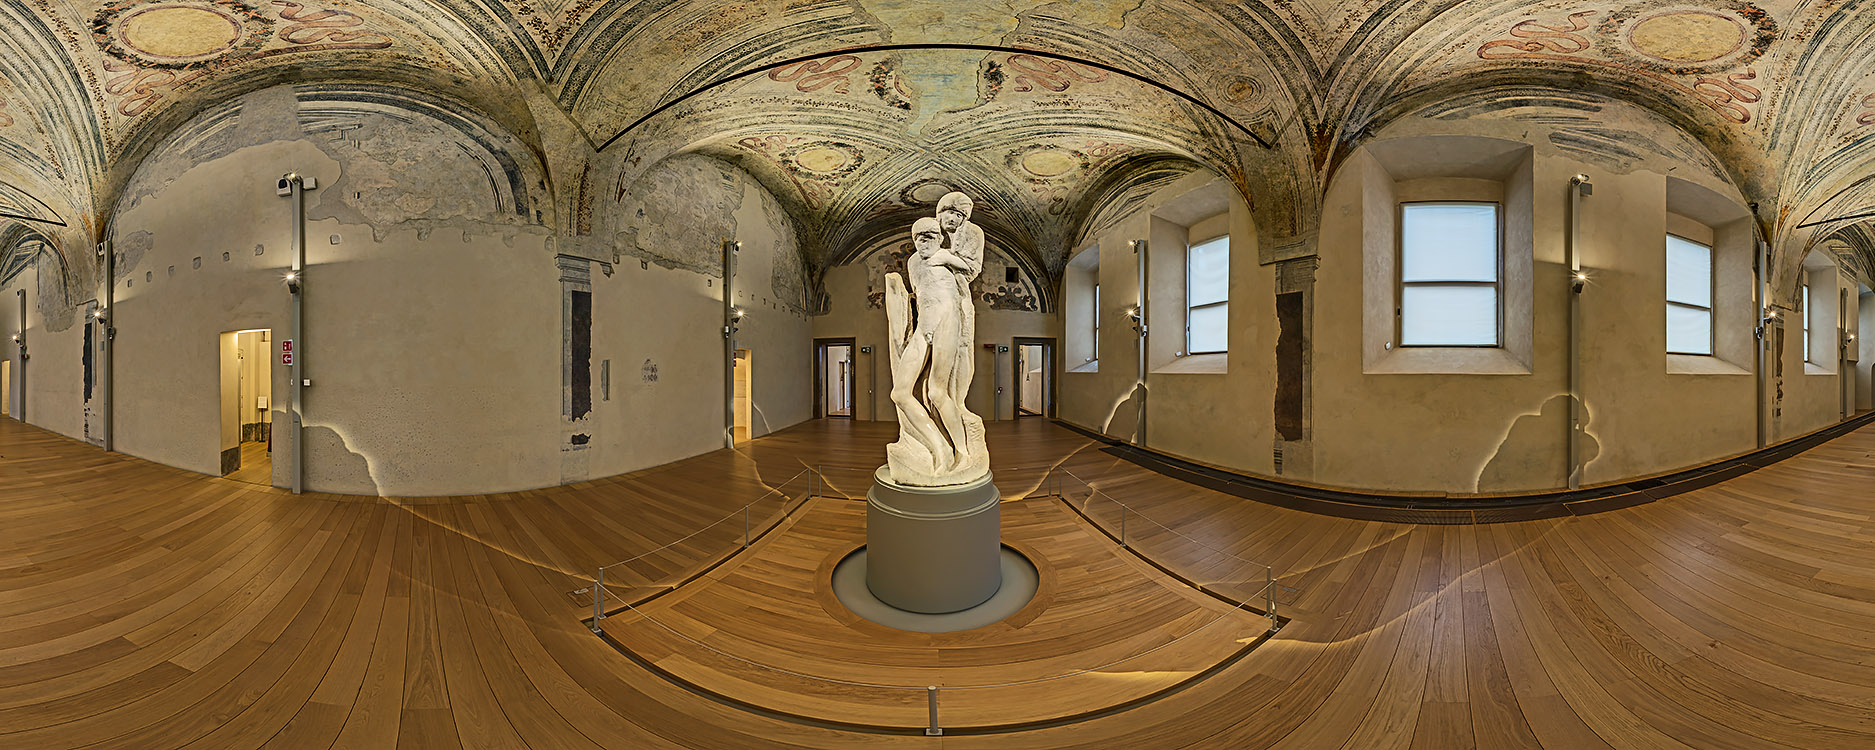 La famosa Pietà Rondanini di Michelangelo Buonarroti